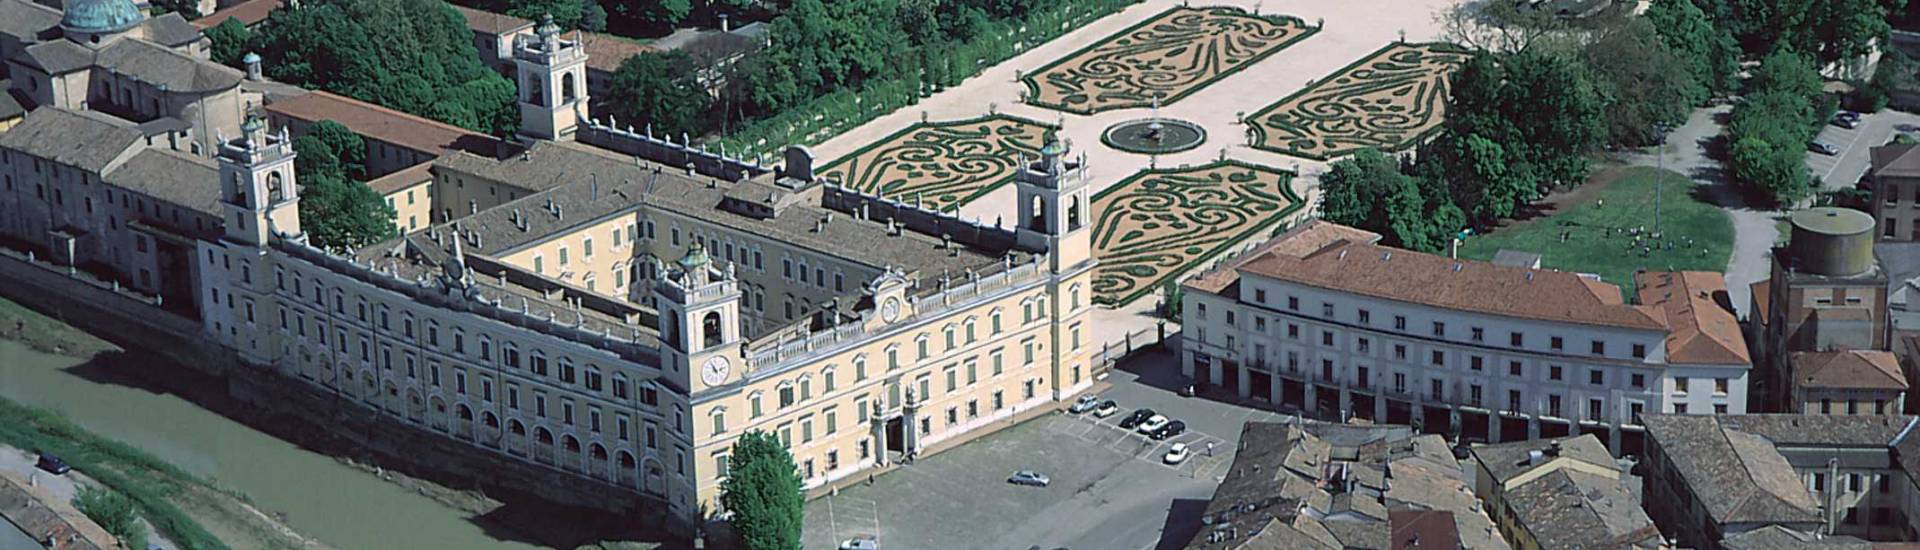 Reggia di Colorno - Reggia di Colorno - vista aerea photo credits: |Provincia di Parma| - Provincia di Parma